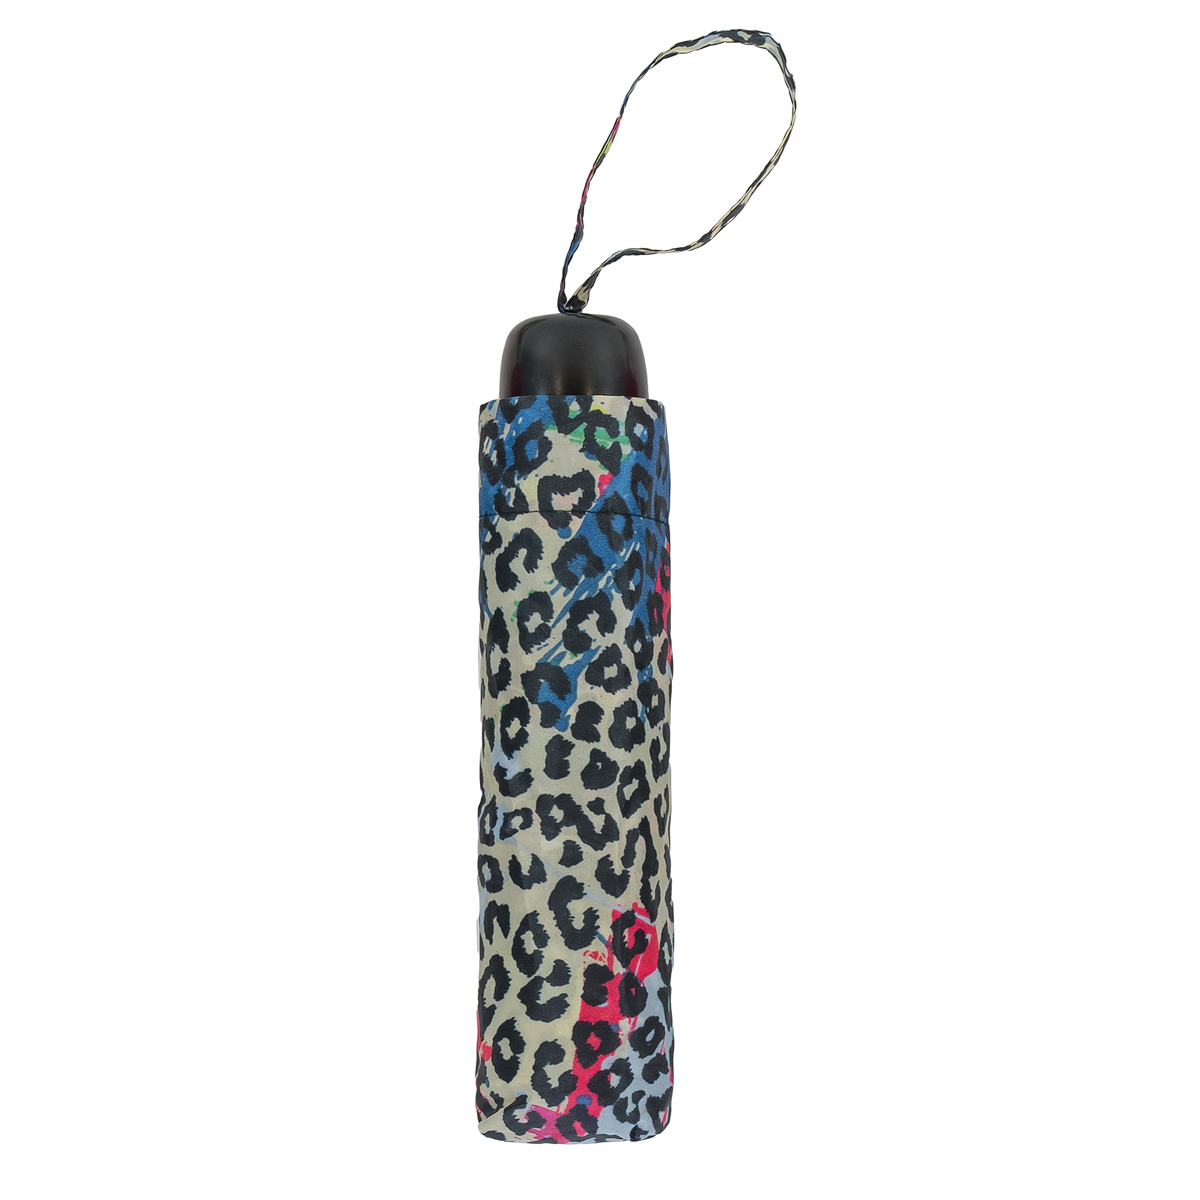 Leopard Print Compact Women's Umbrella (31102L)